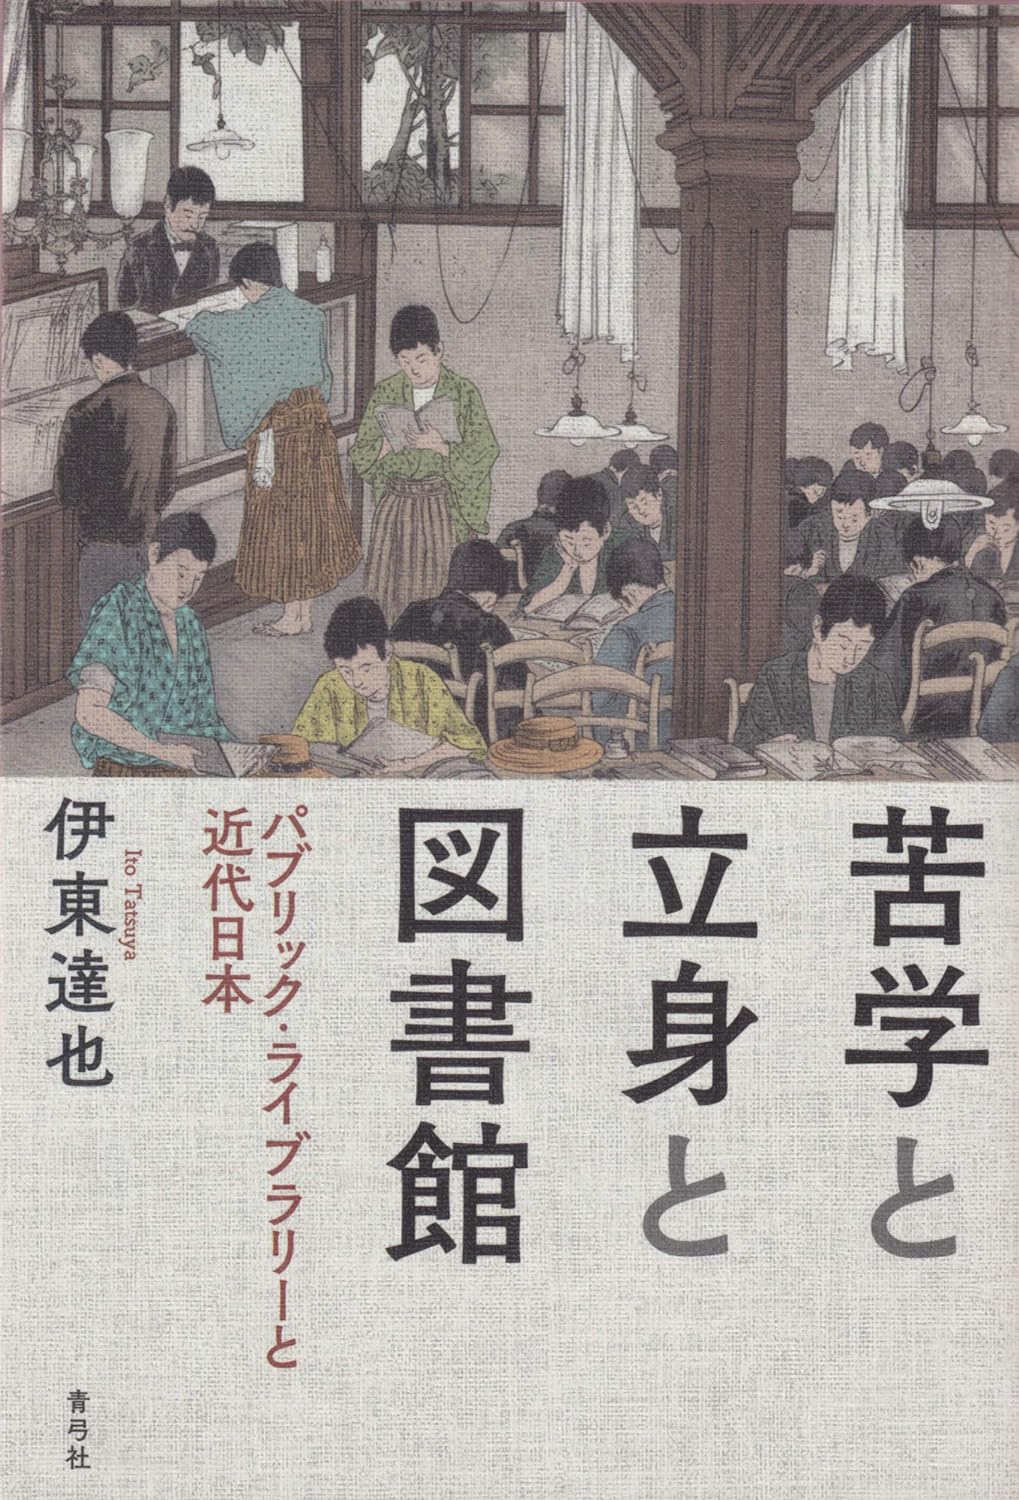 苦學と立身と圖書館 パブリックライブラリ-と近代日本